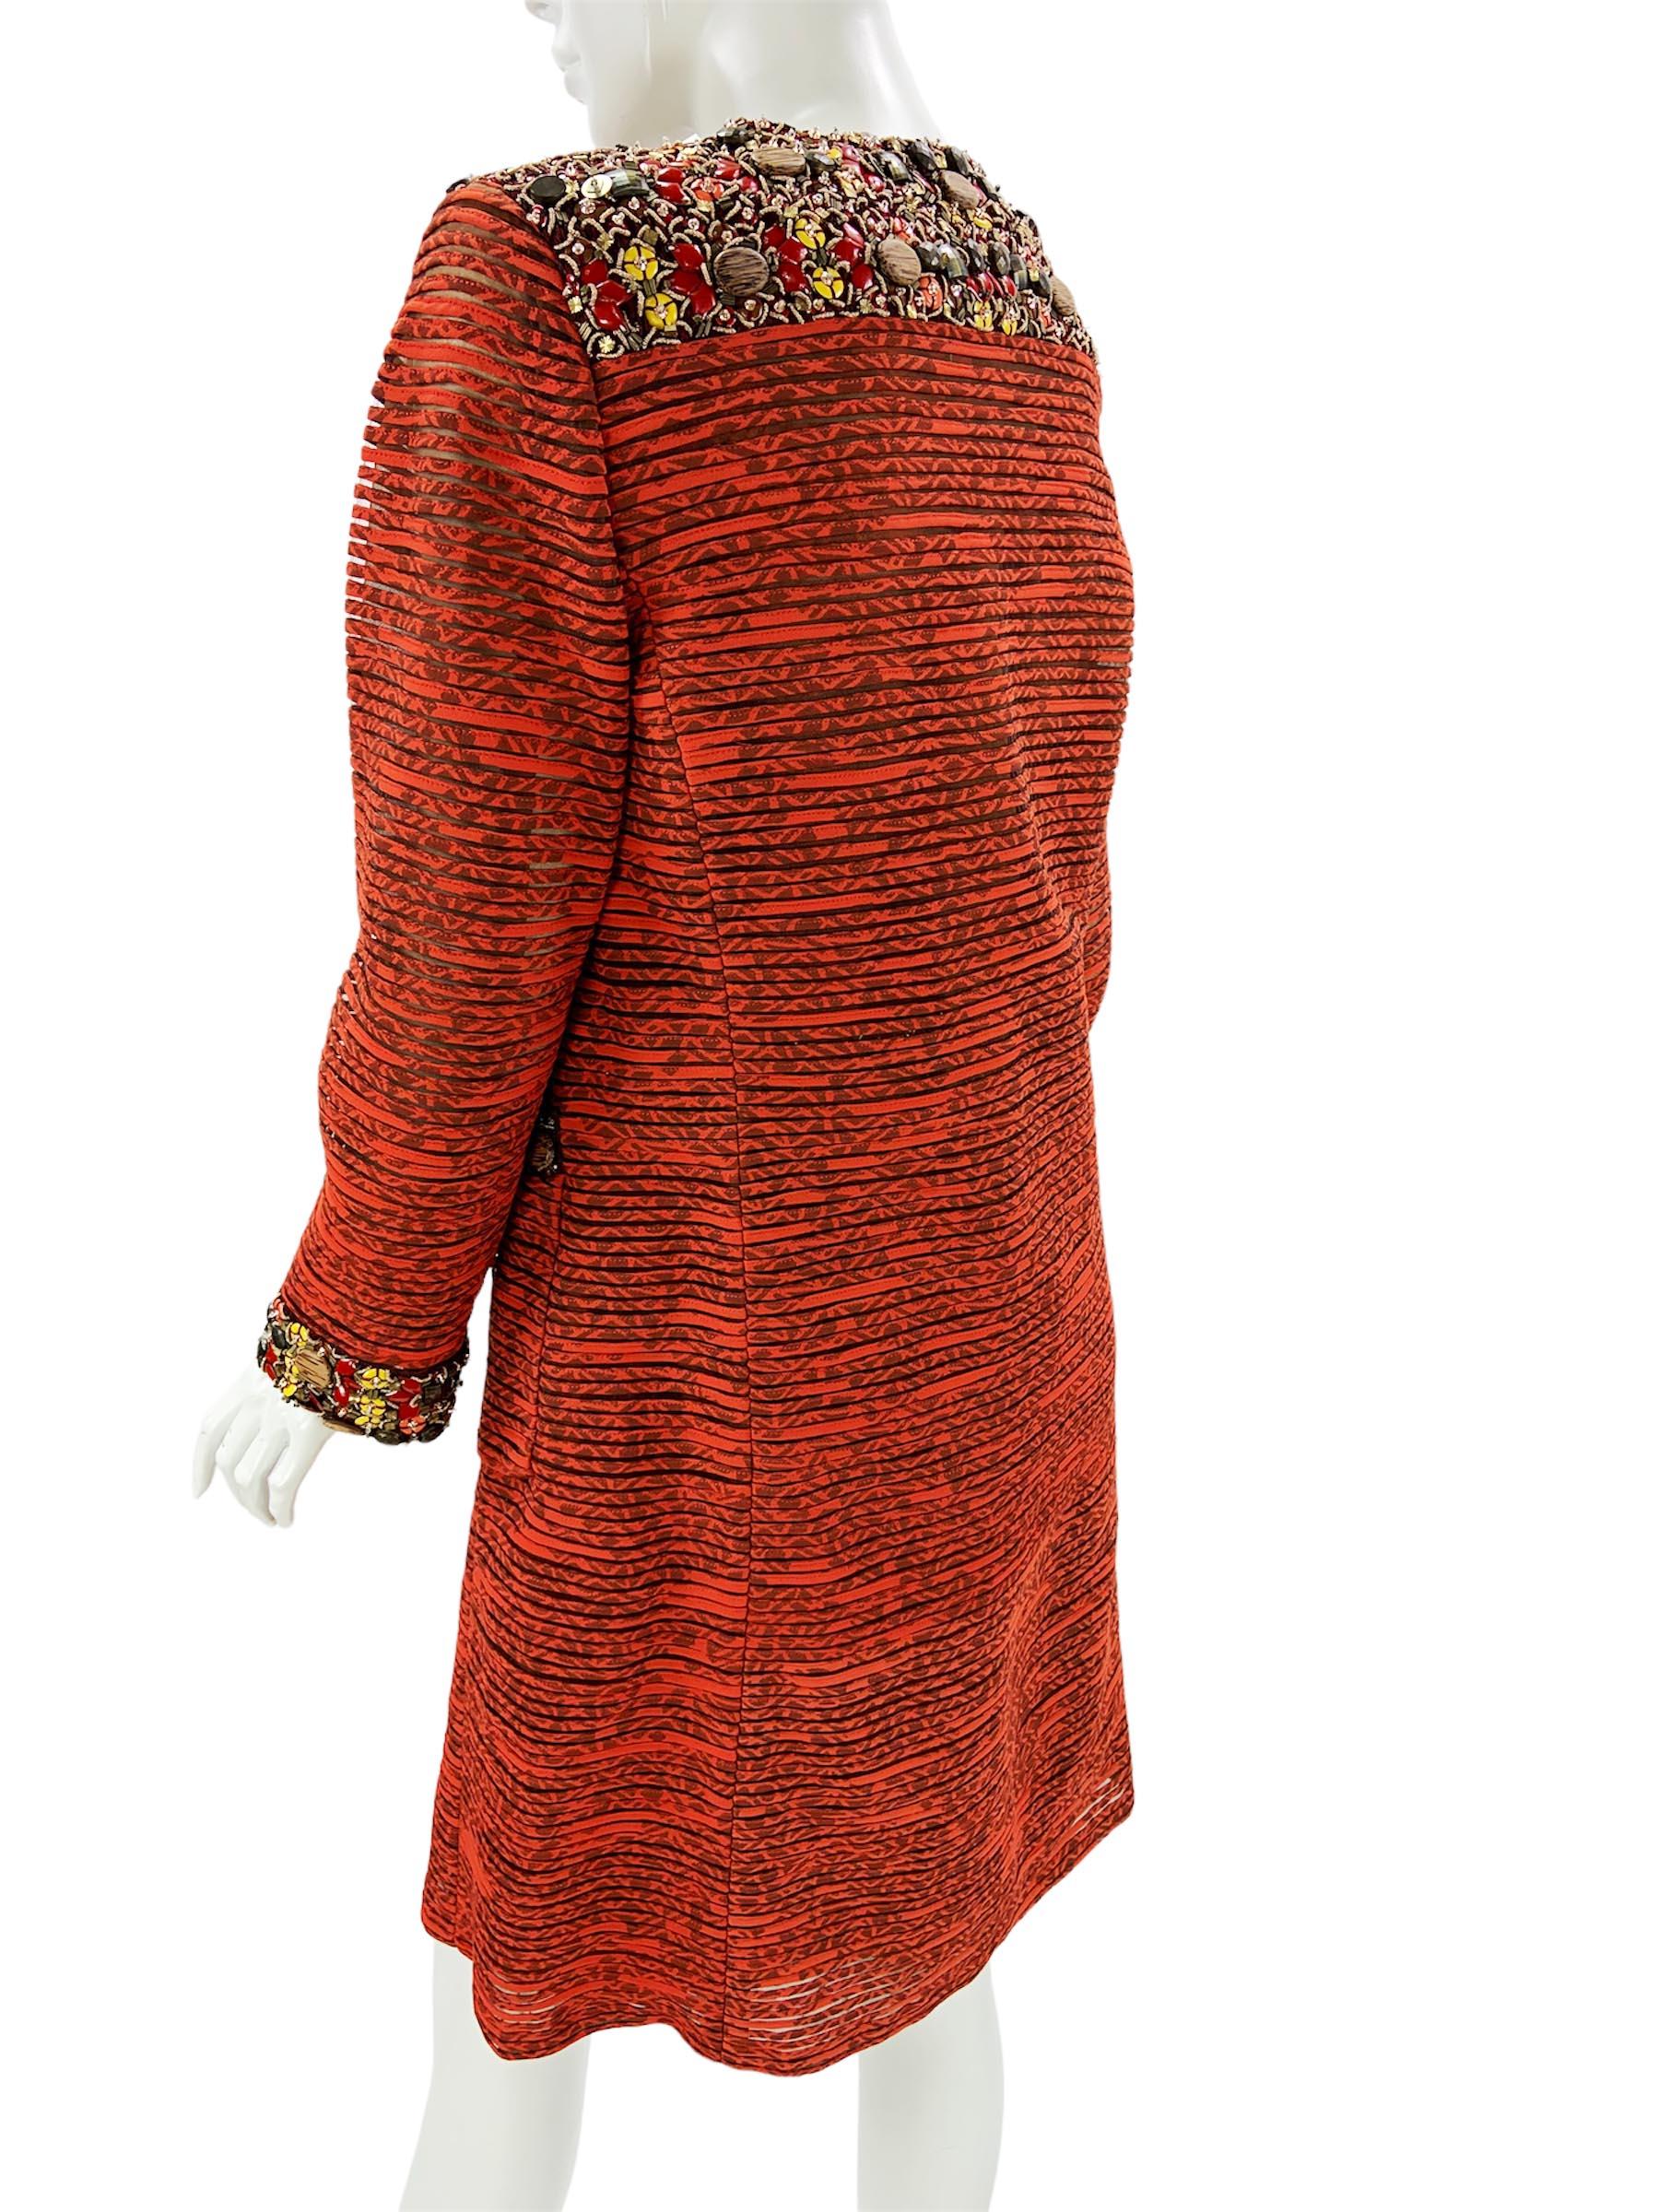 Oscar de la Renta 2009 Collection Silk Brick Red Embellished Coat + Dress US 6 4 For Sale 3